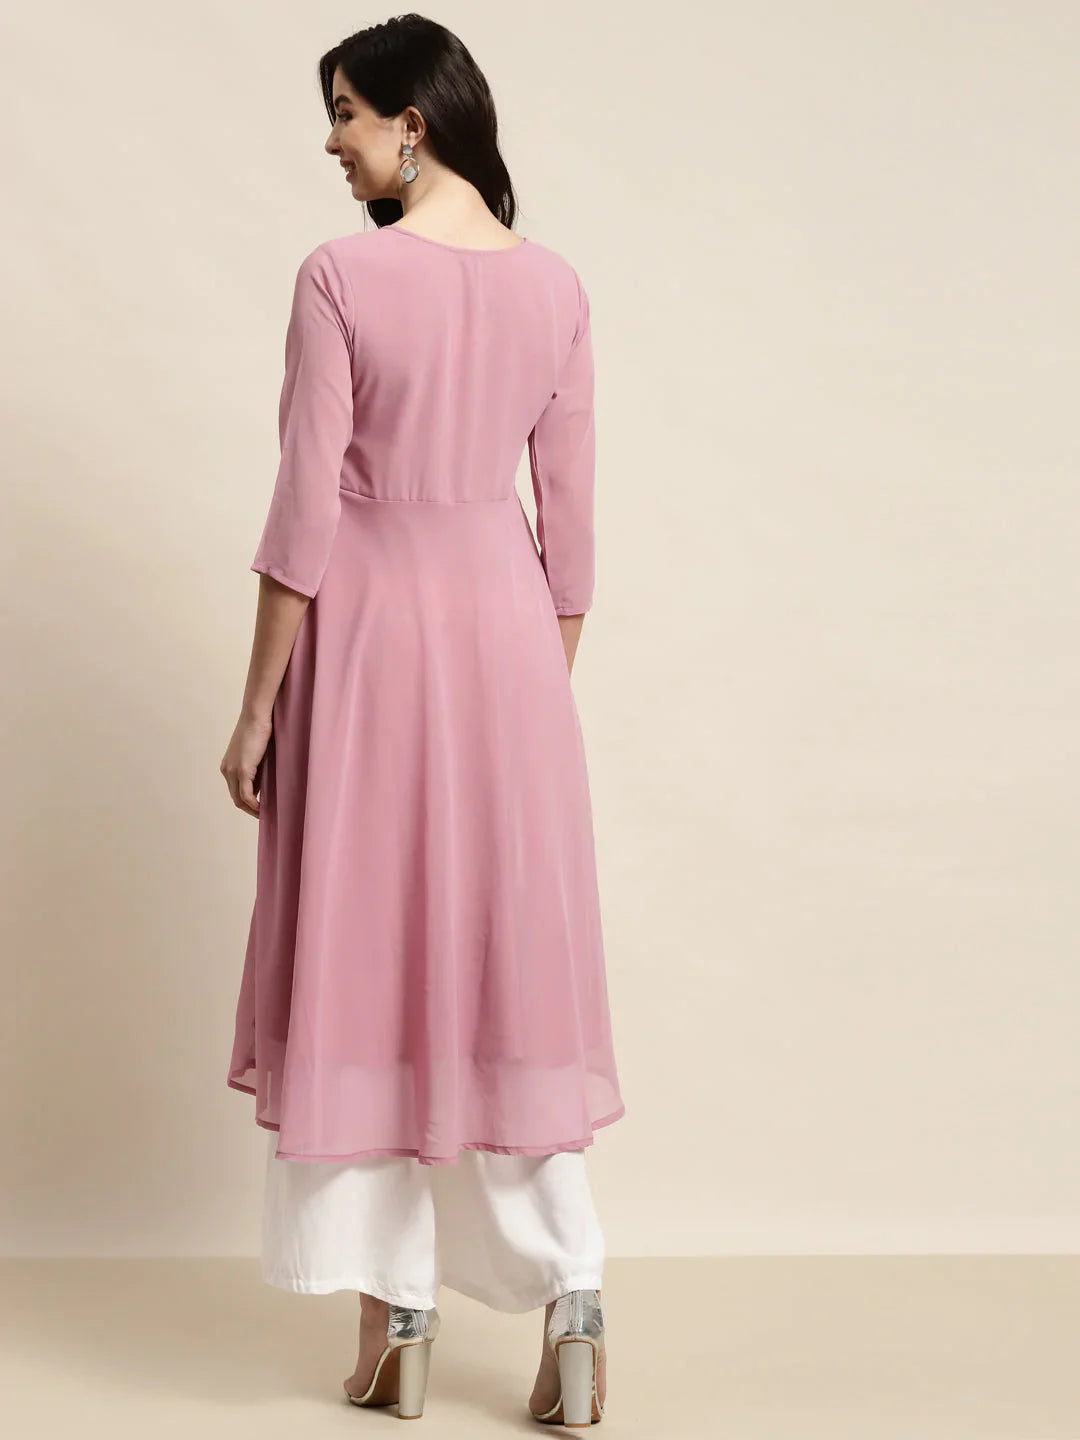 Jompers Women's Yoke Design Georgette Anarkali Kurta - Pink - Distacart